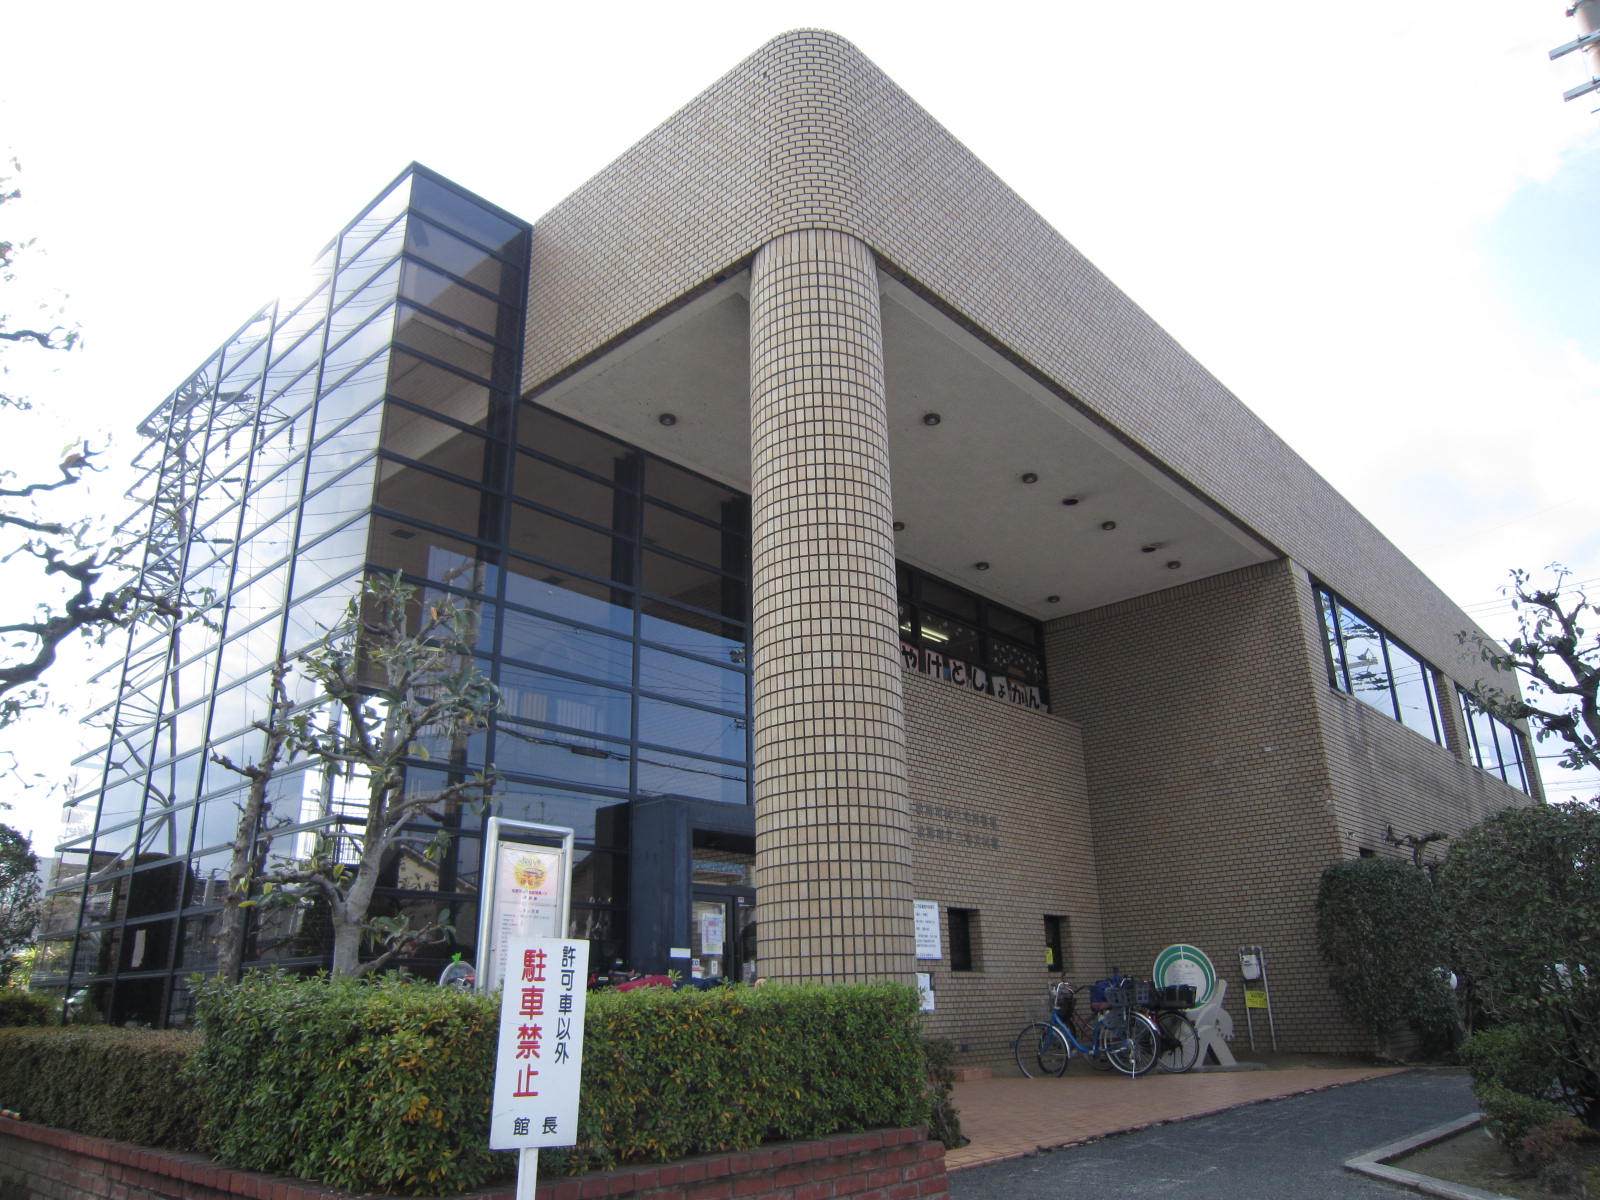 library. 623m to Matsubara citizen Miyake library (library)